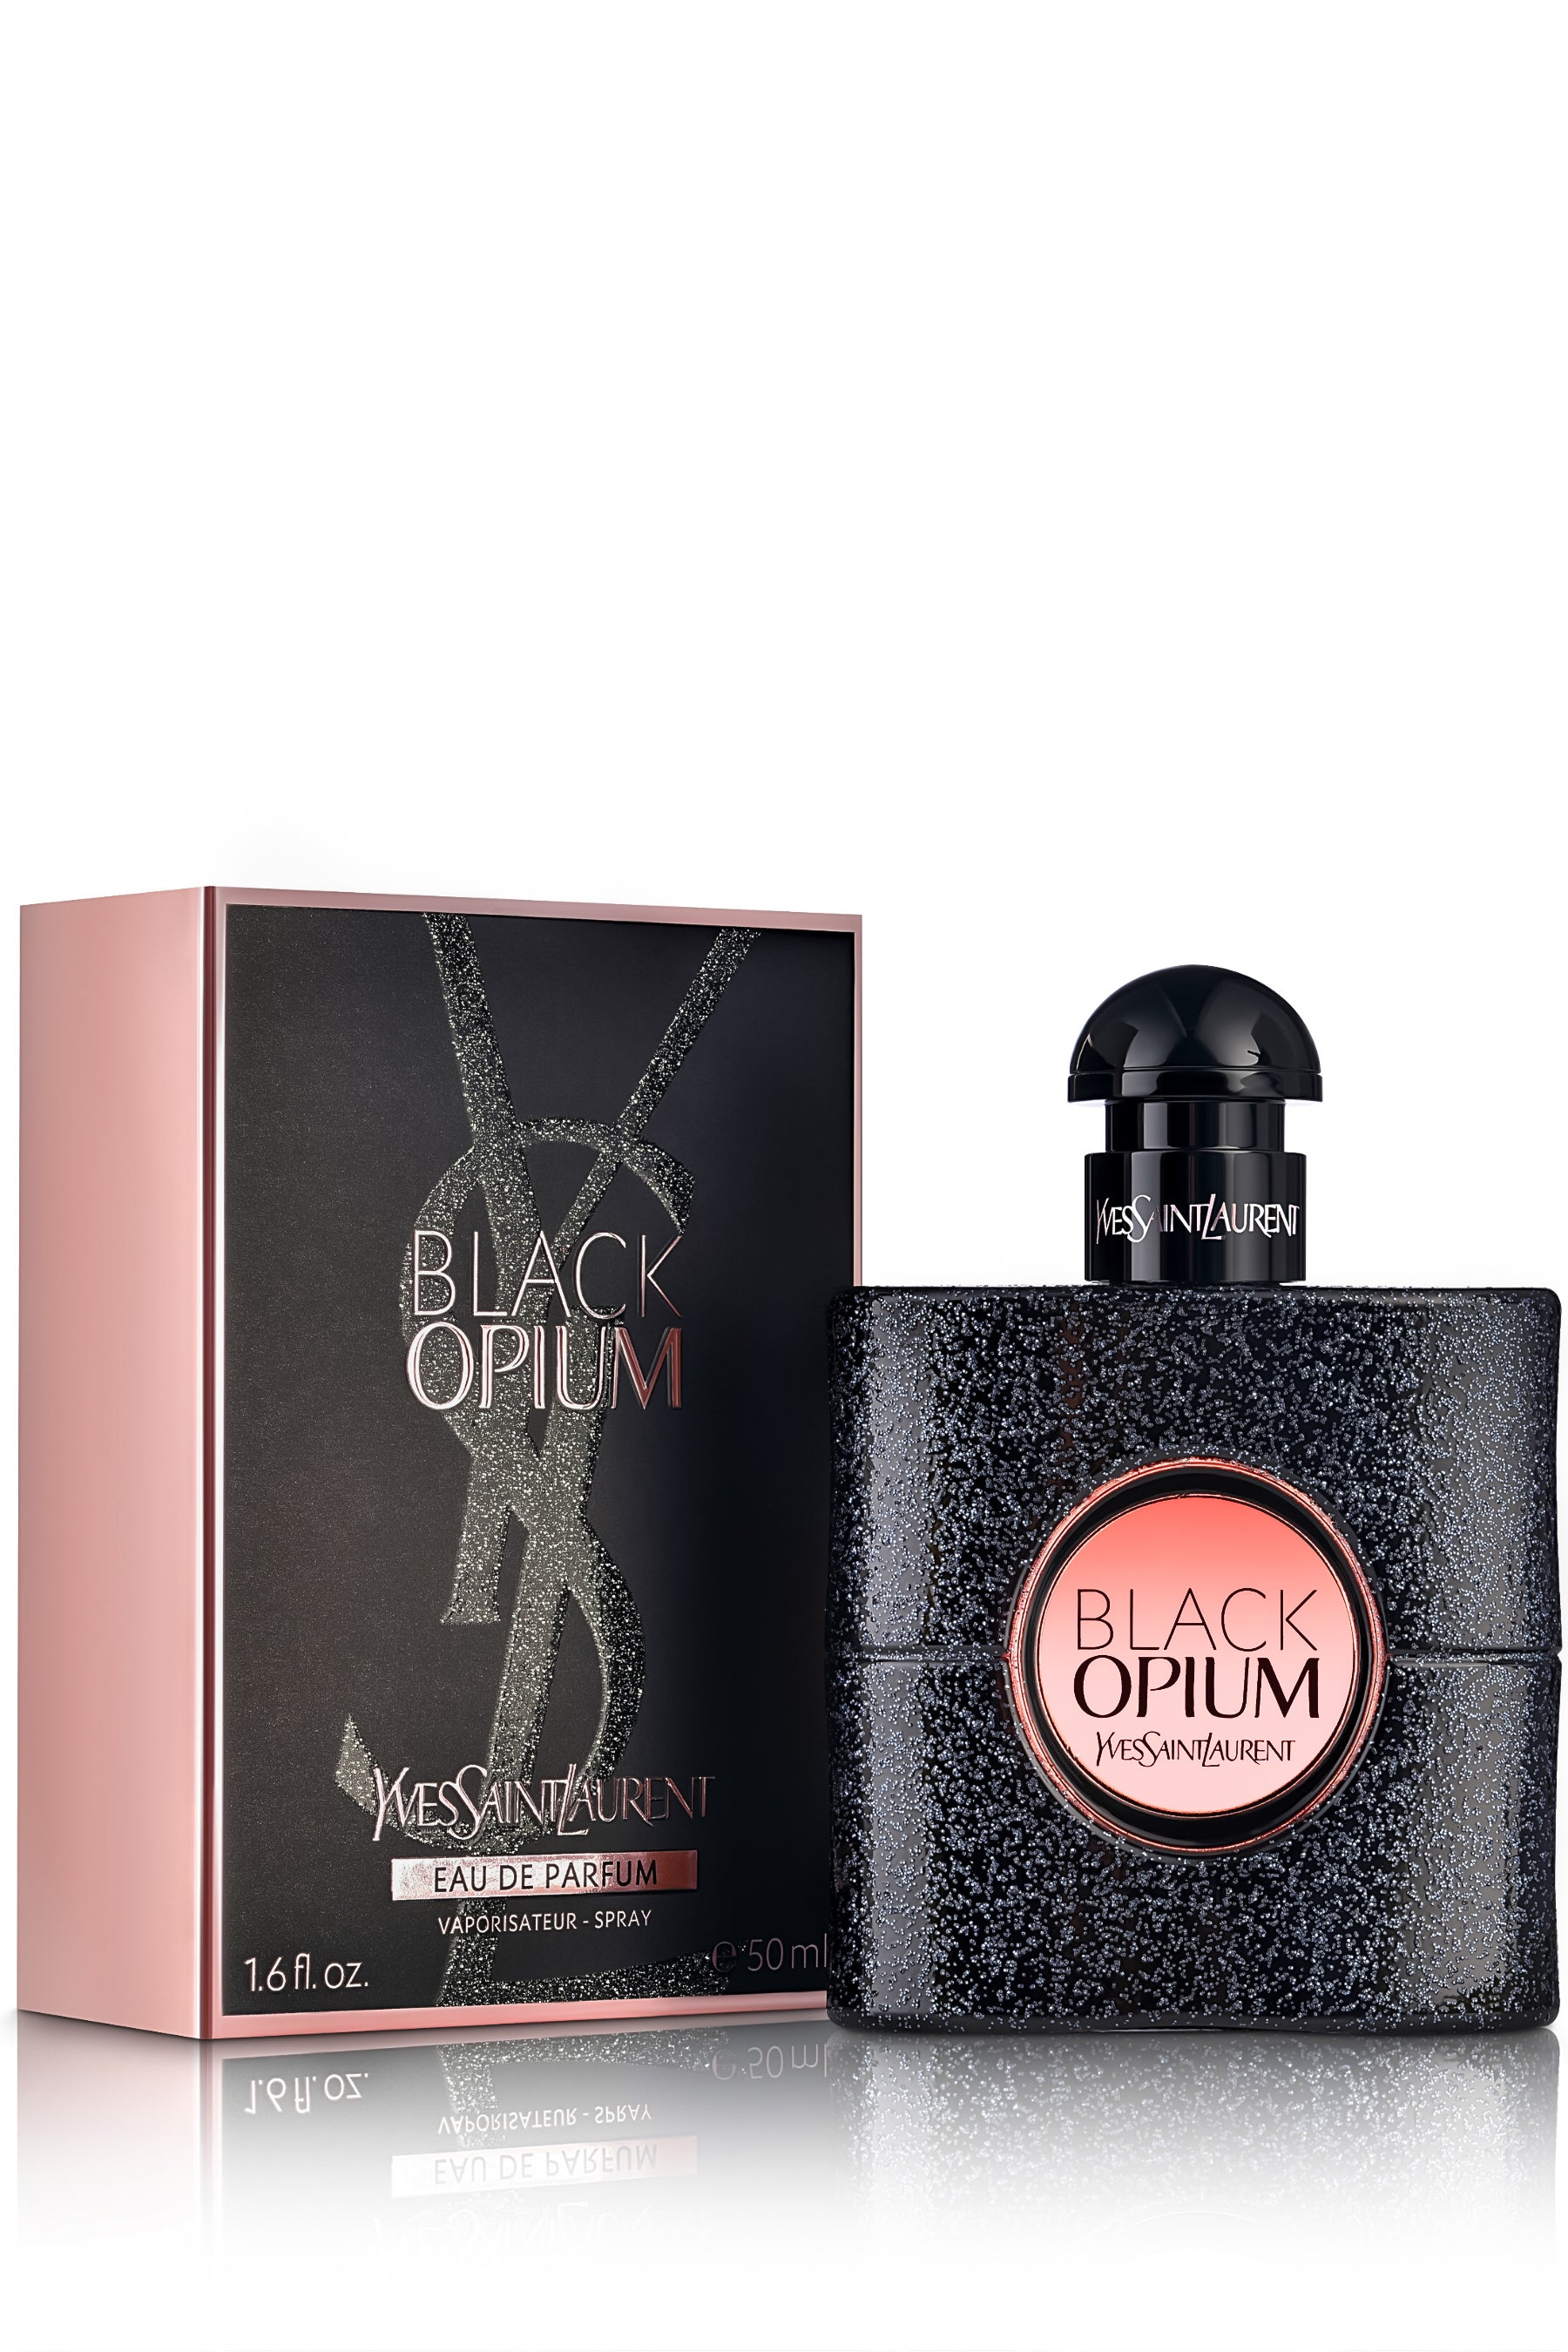 Nonsens købmand Il Yves Saint Laurent | Black Opium Perfume | REBL Scents